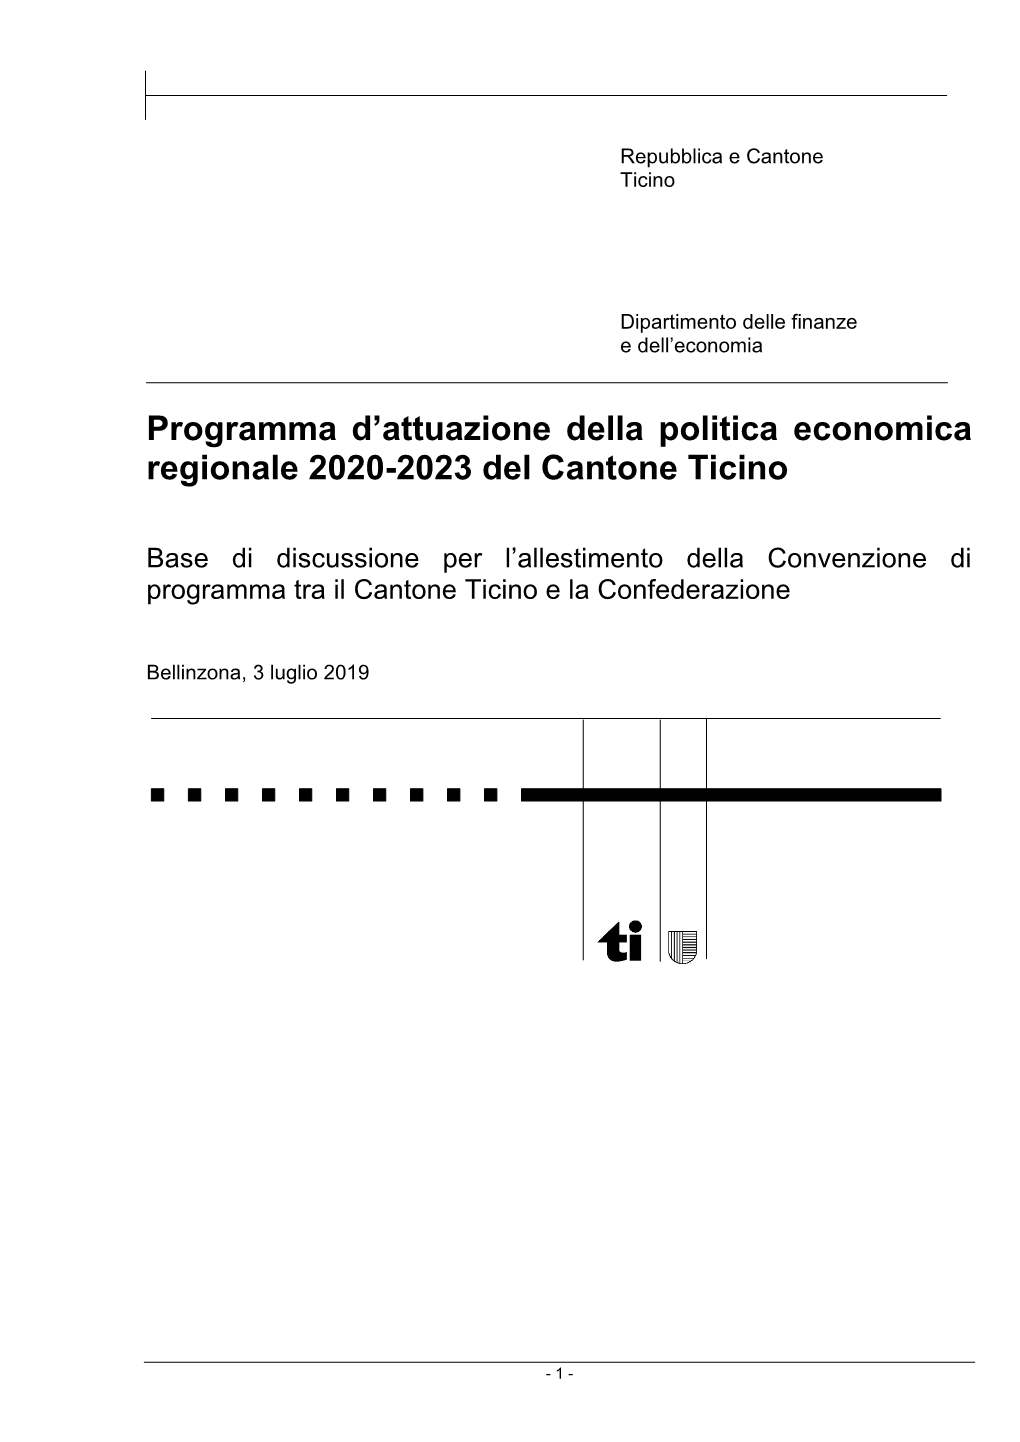 Programma D'attuazione Della Politica Economica Regionale 2020-2023